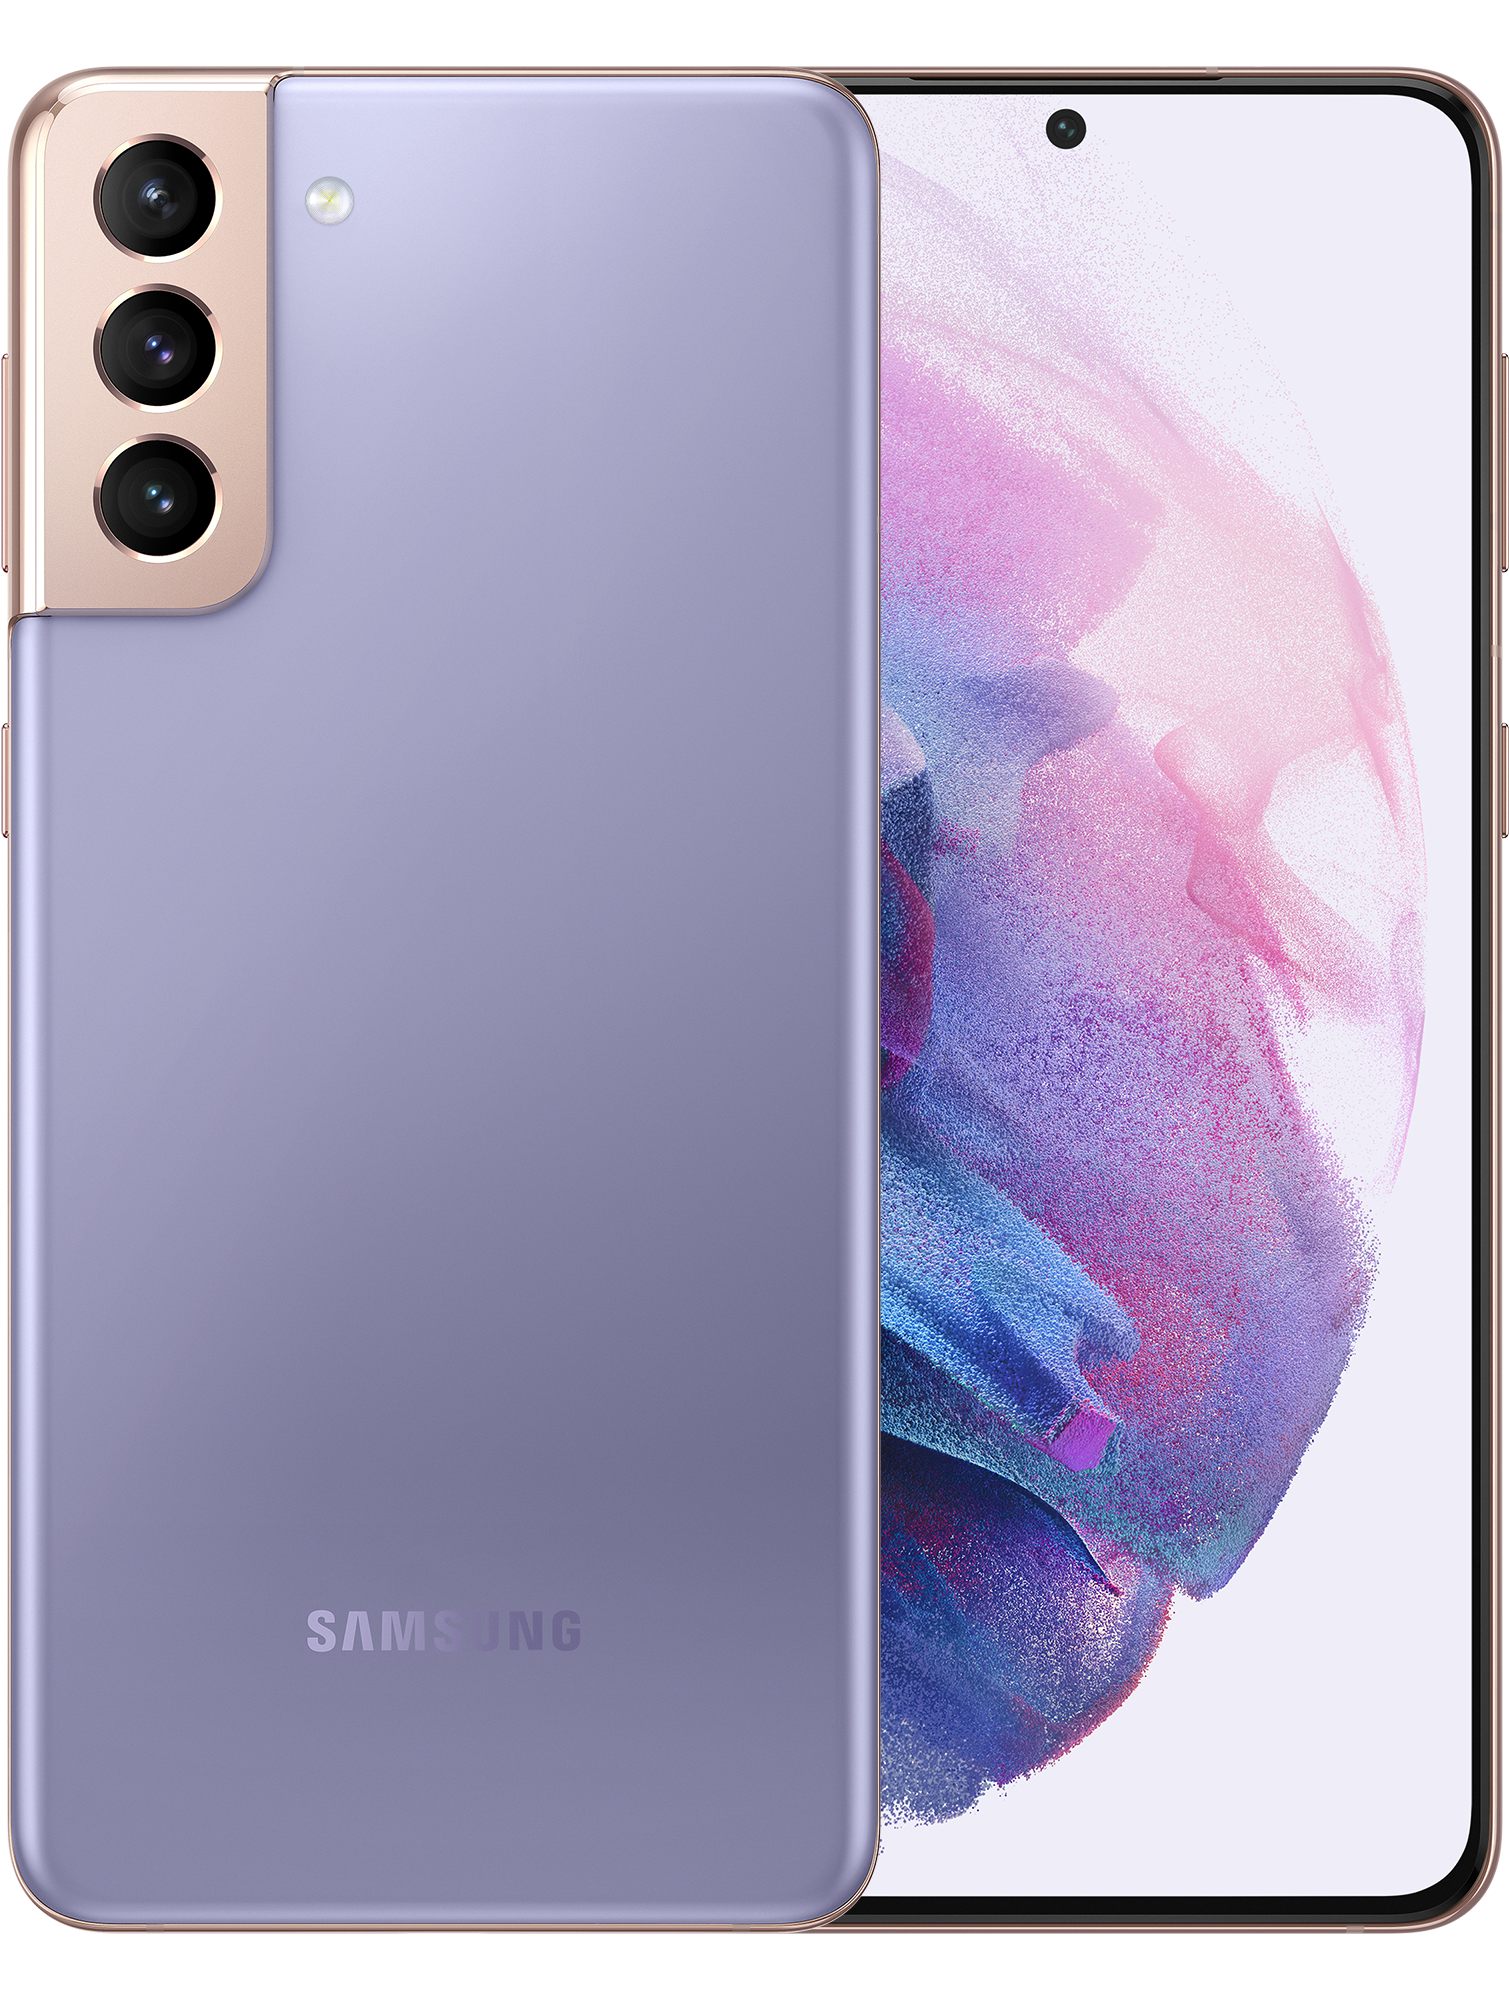 Samsung Galaxy S21 Plus 128GB Phantom Violet